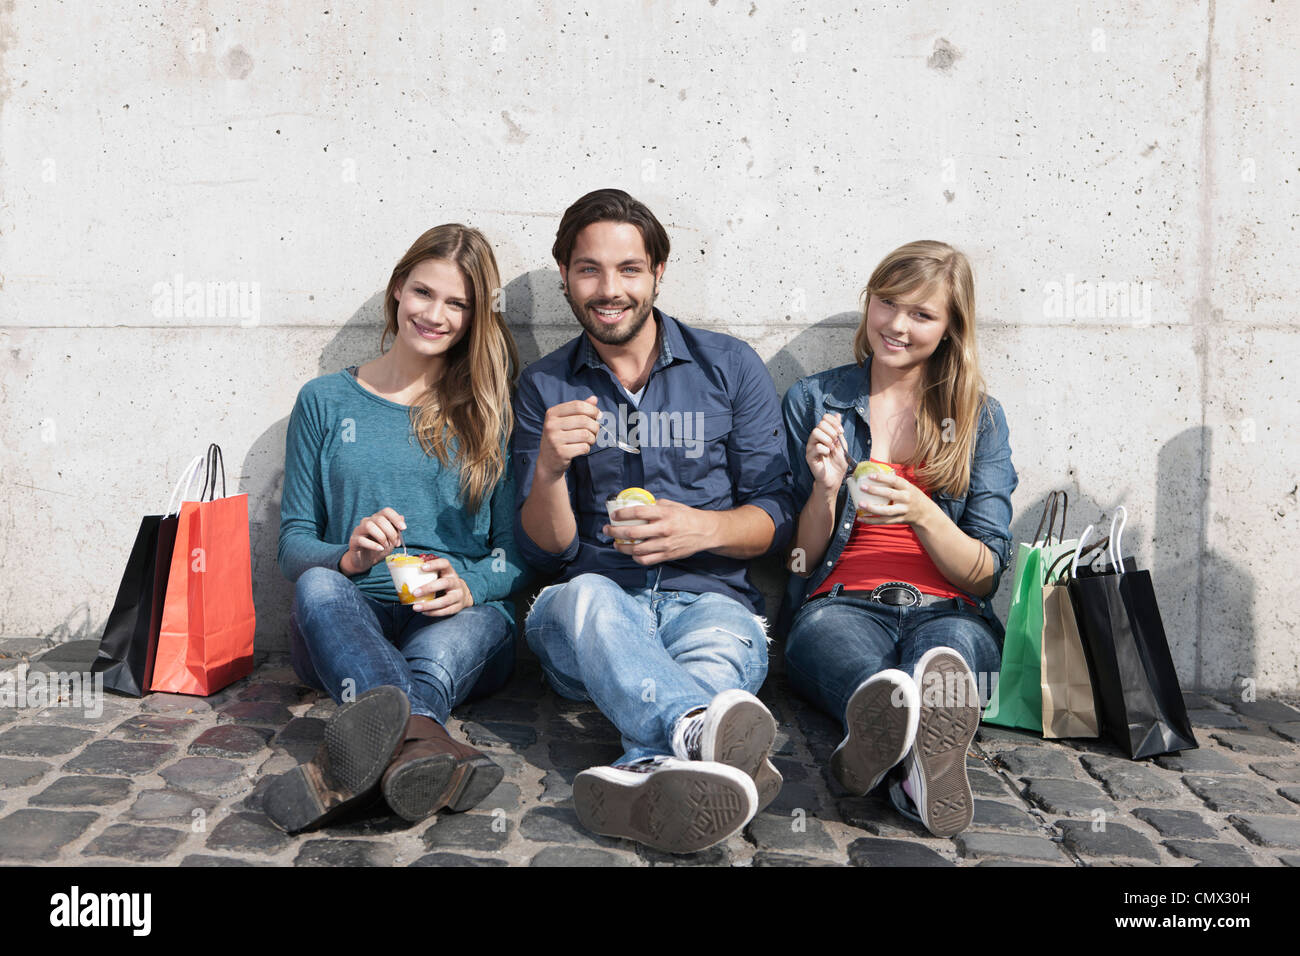 Deutschland, Köln, junger Mann und mit Eis und Einkaufstaschen, Lächeln, Porträt Stockfoto